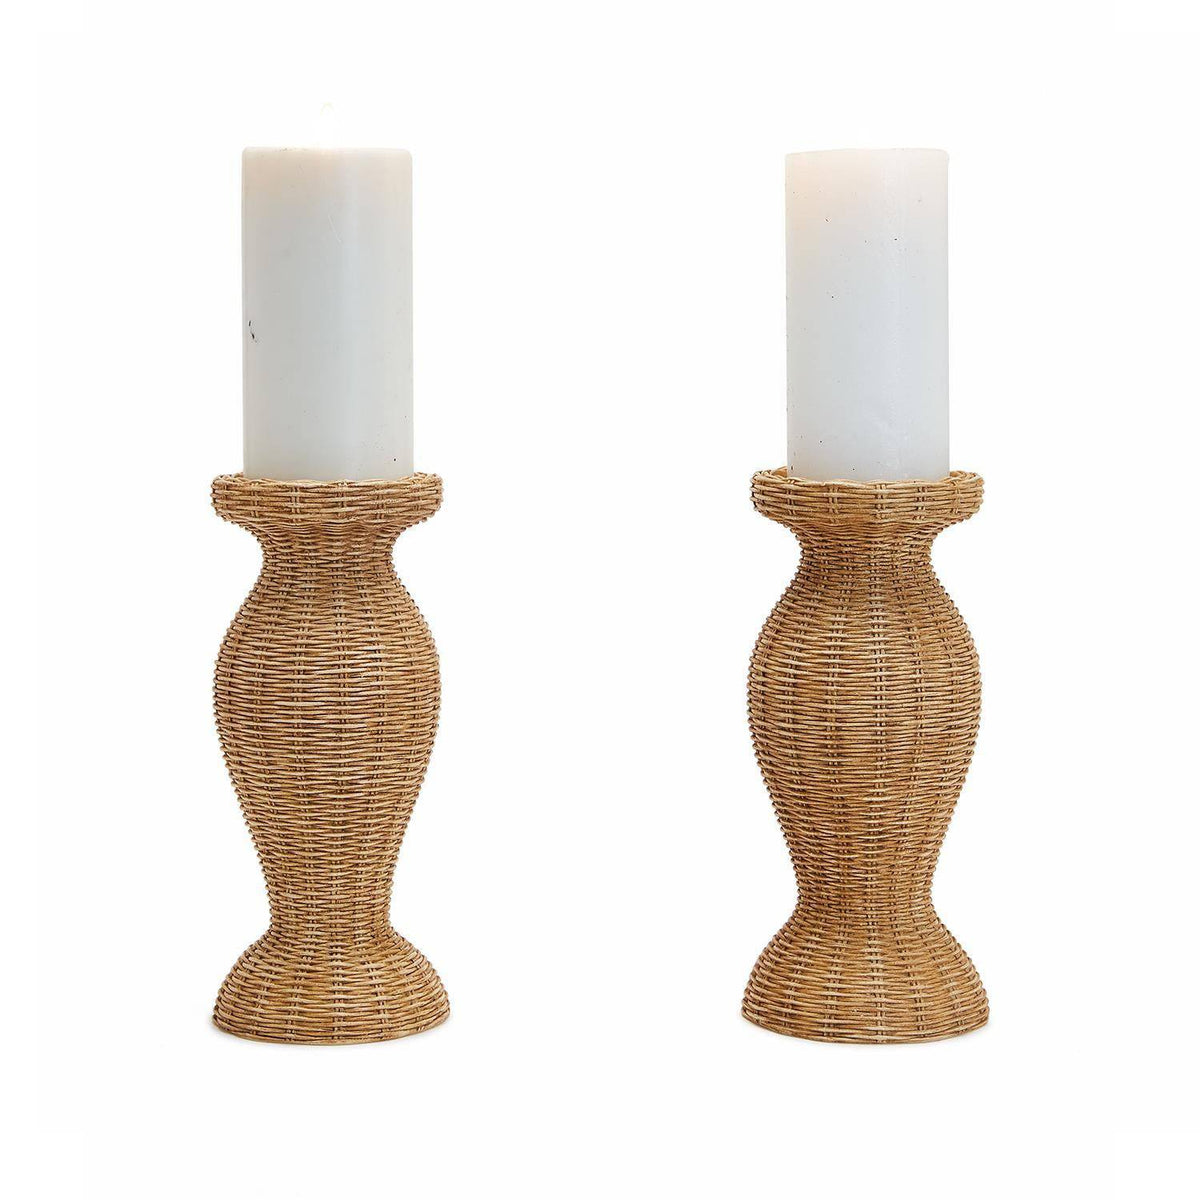 Basket Weave Pattern Pedestal Candleholder - Resin - The Preppy Bunny